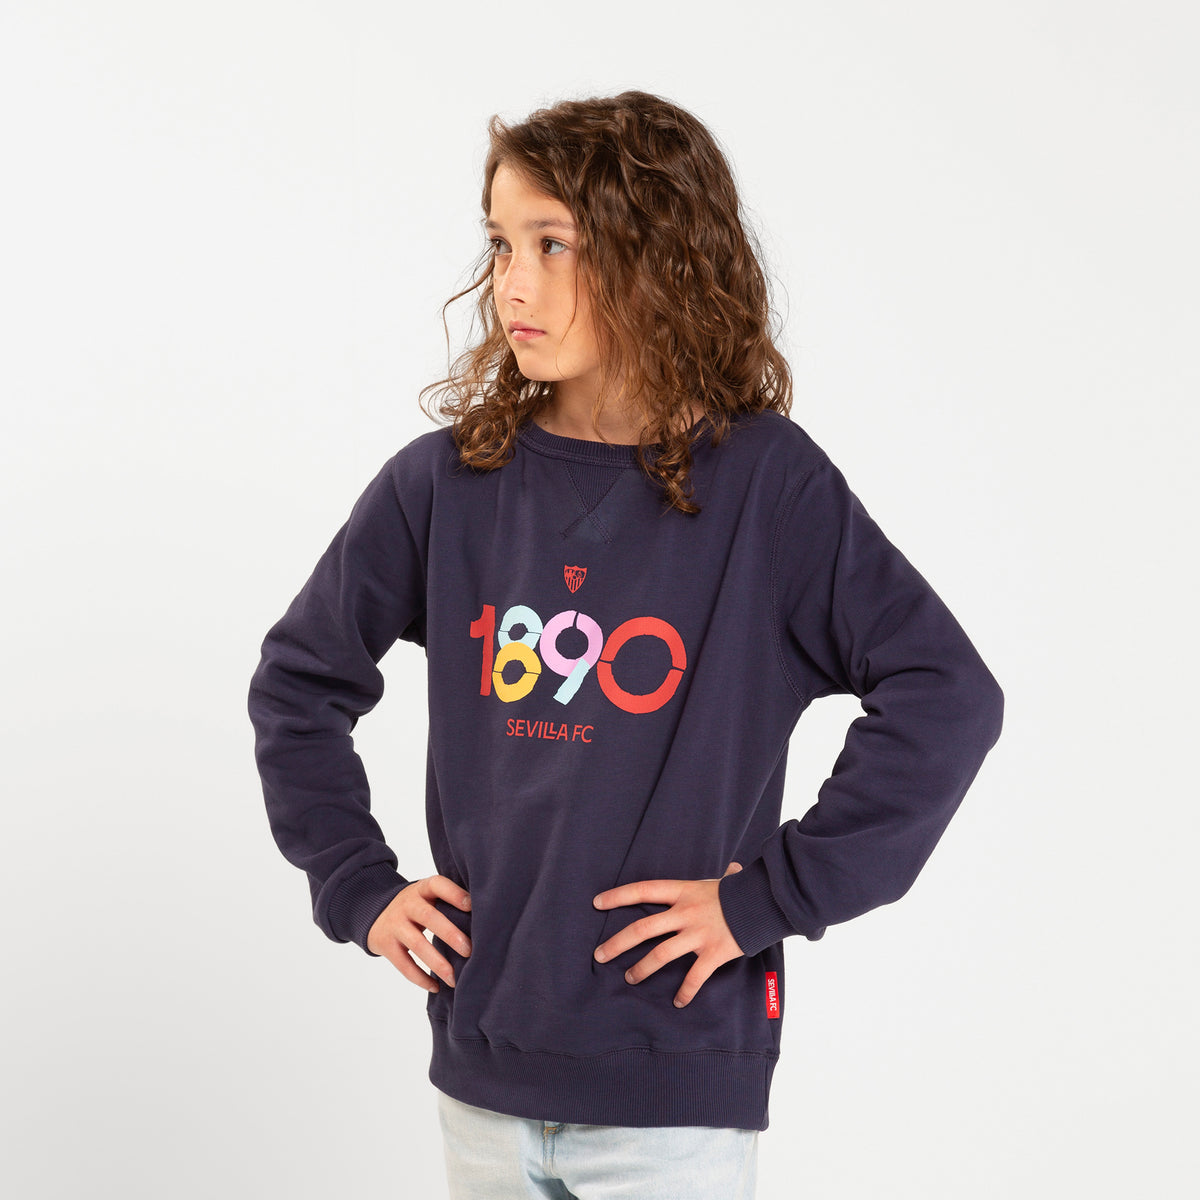 Kids Navy sweatshirt 1890 23/24